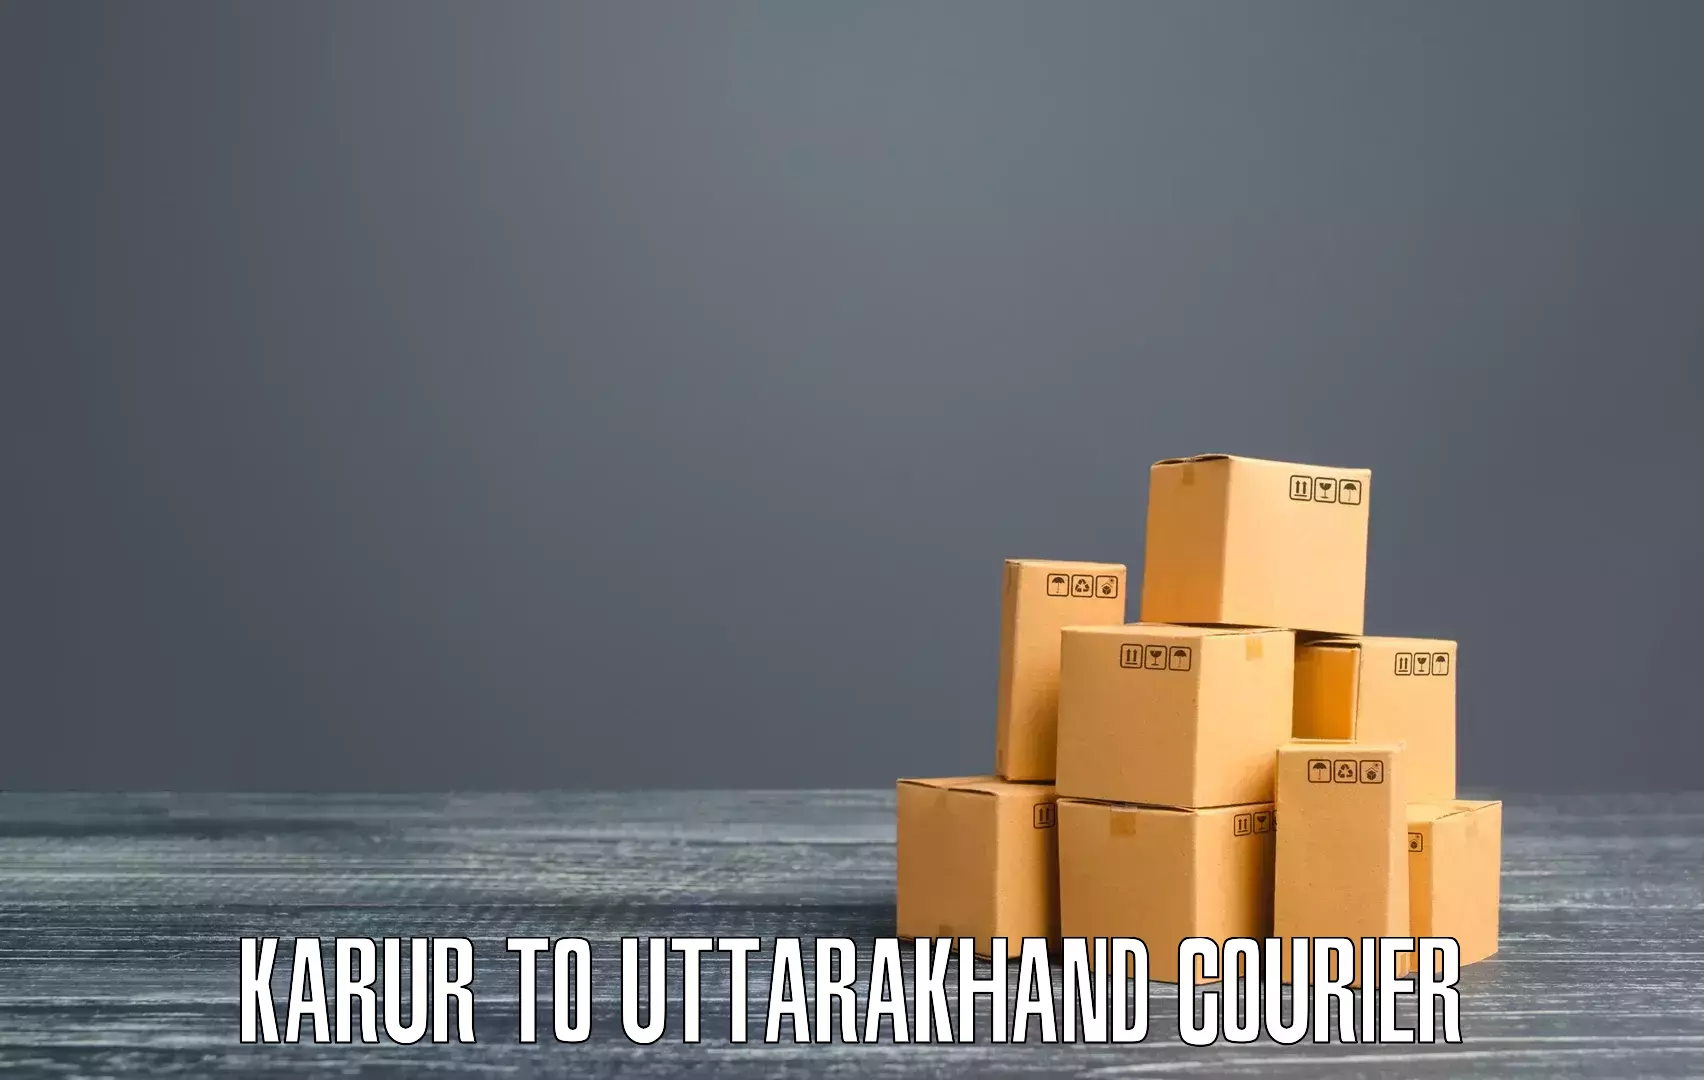 Local courier options Karur to Karnaprayag